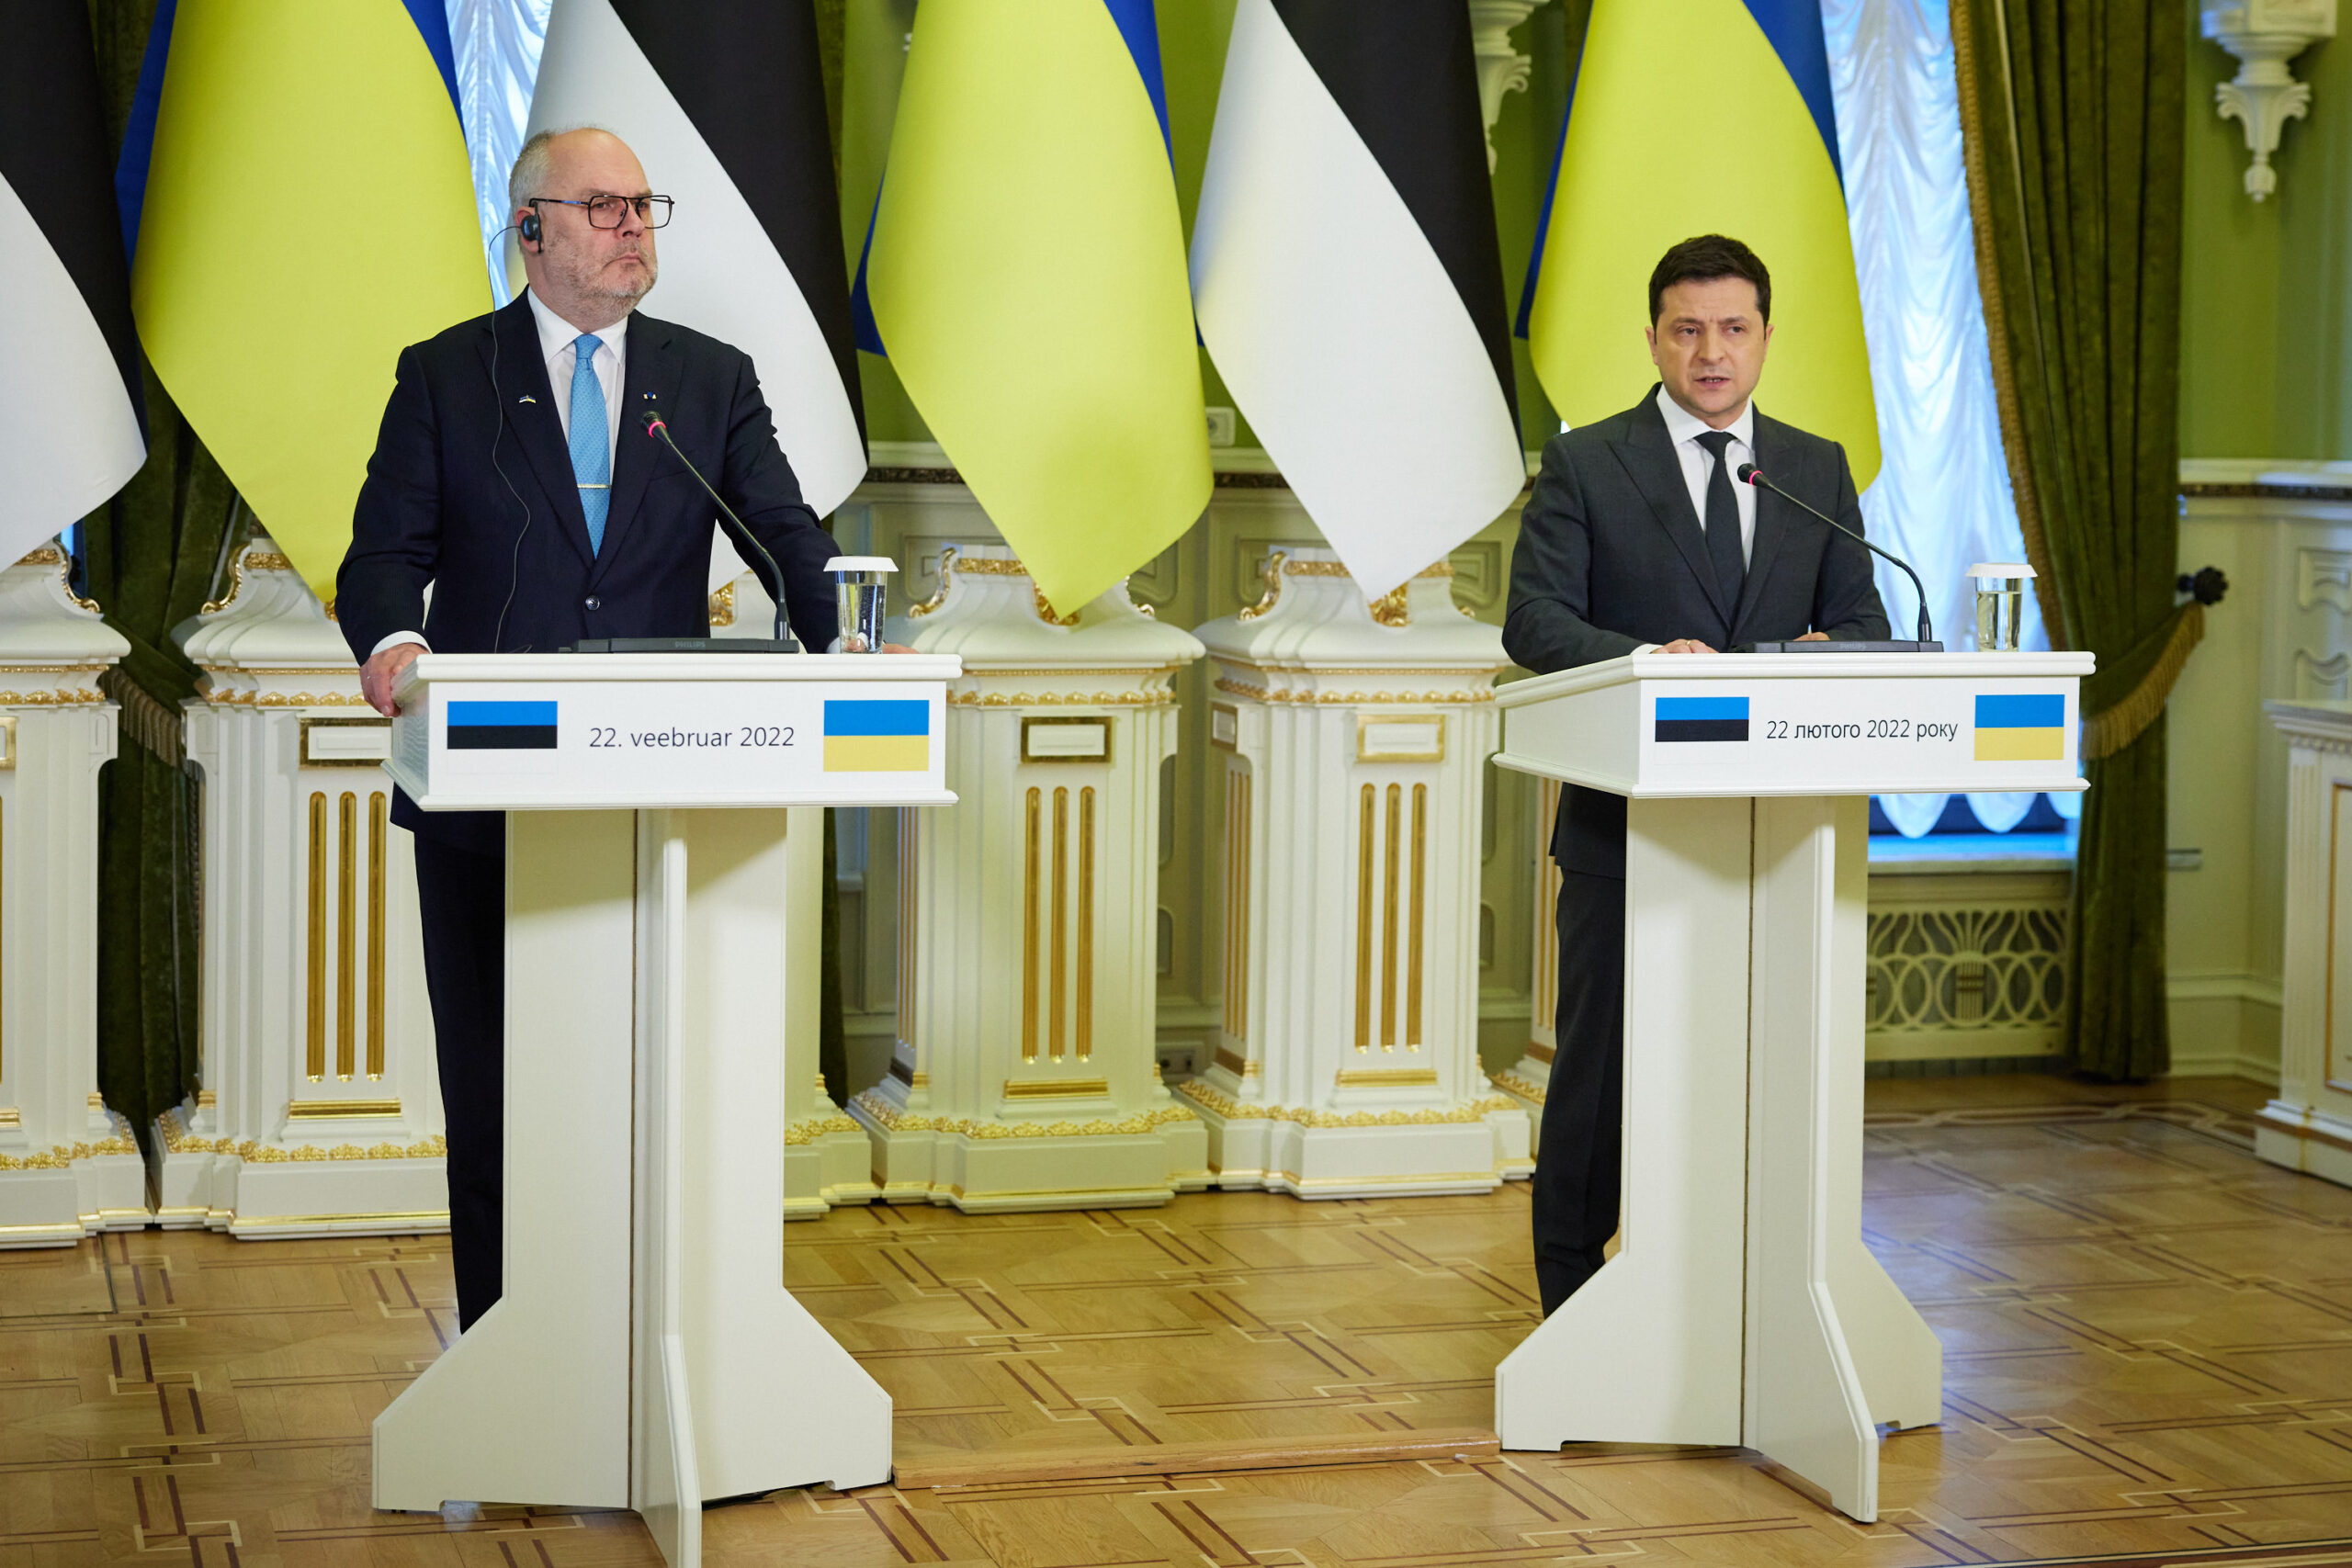 Rencontre entre le président estonien, Alar Karis, et le président ukrainien Volodymyr Zelensky à Kiev, le 22 février 2022 à Kiev.